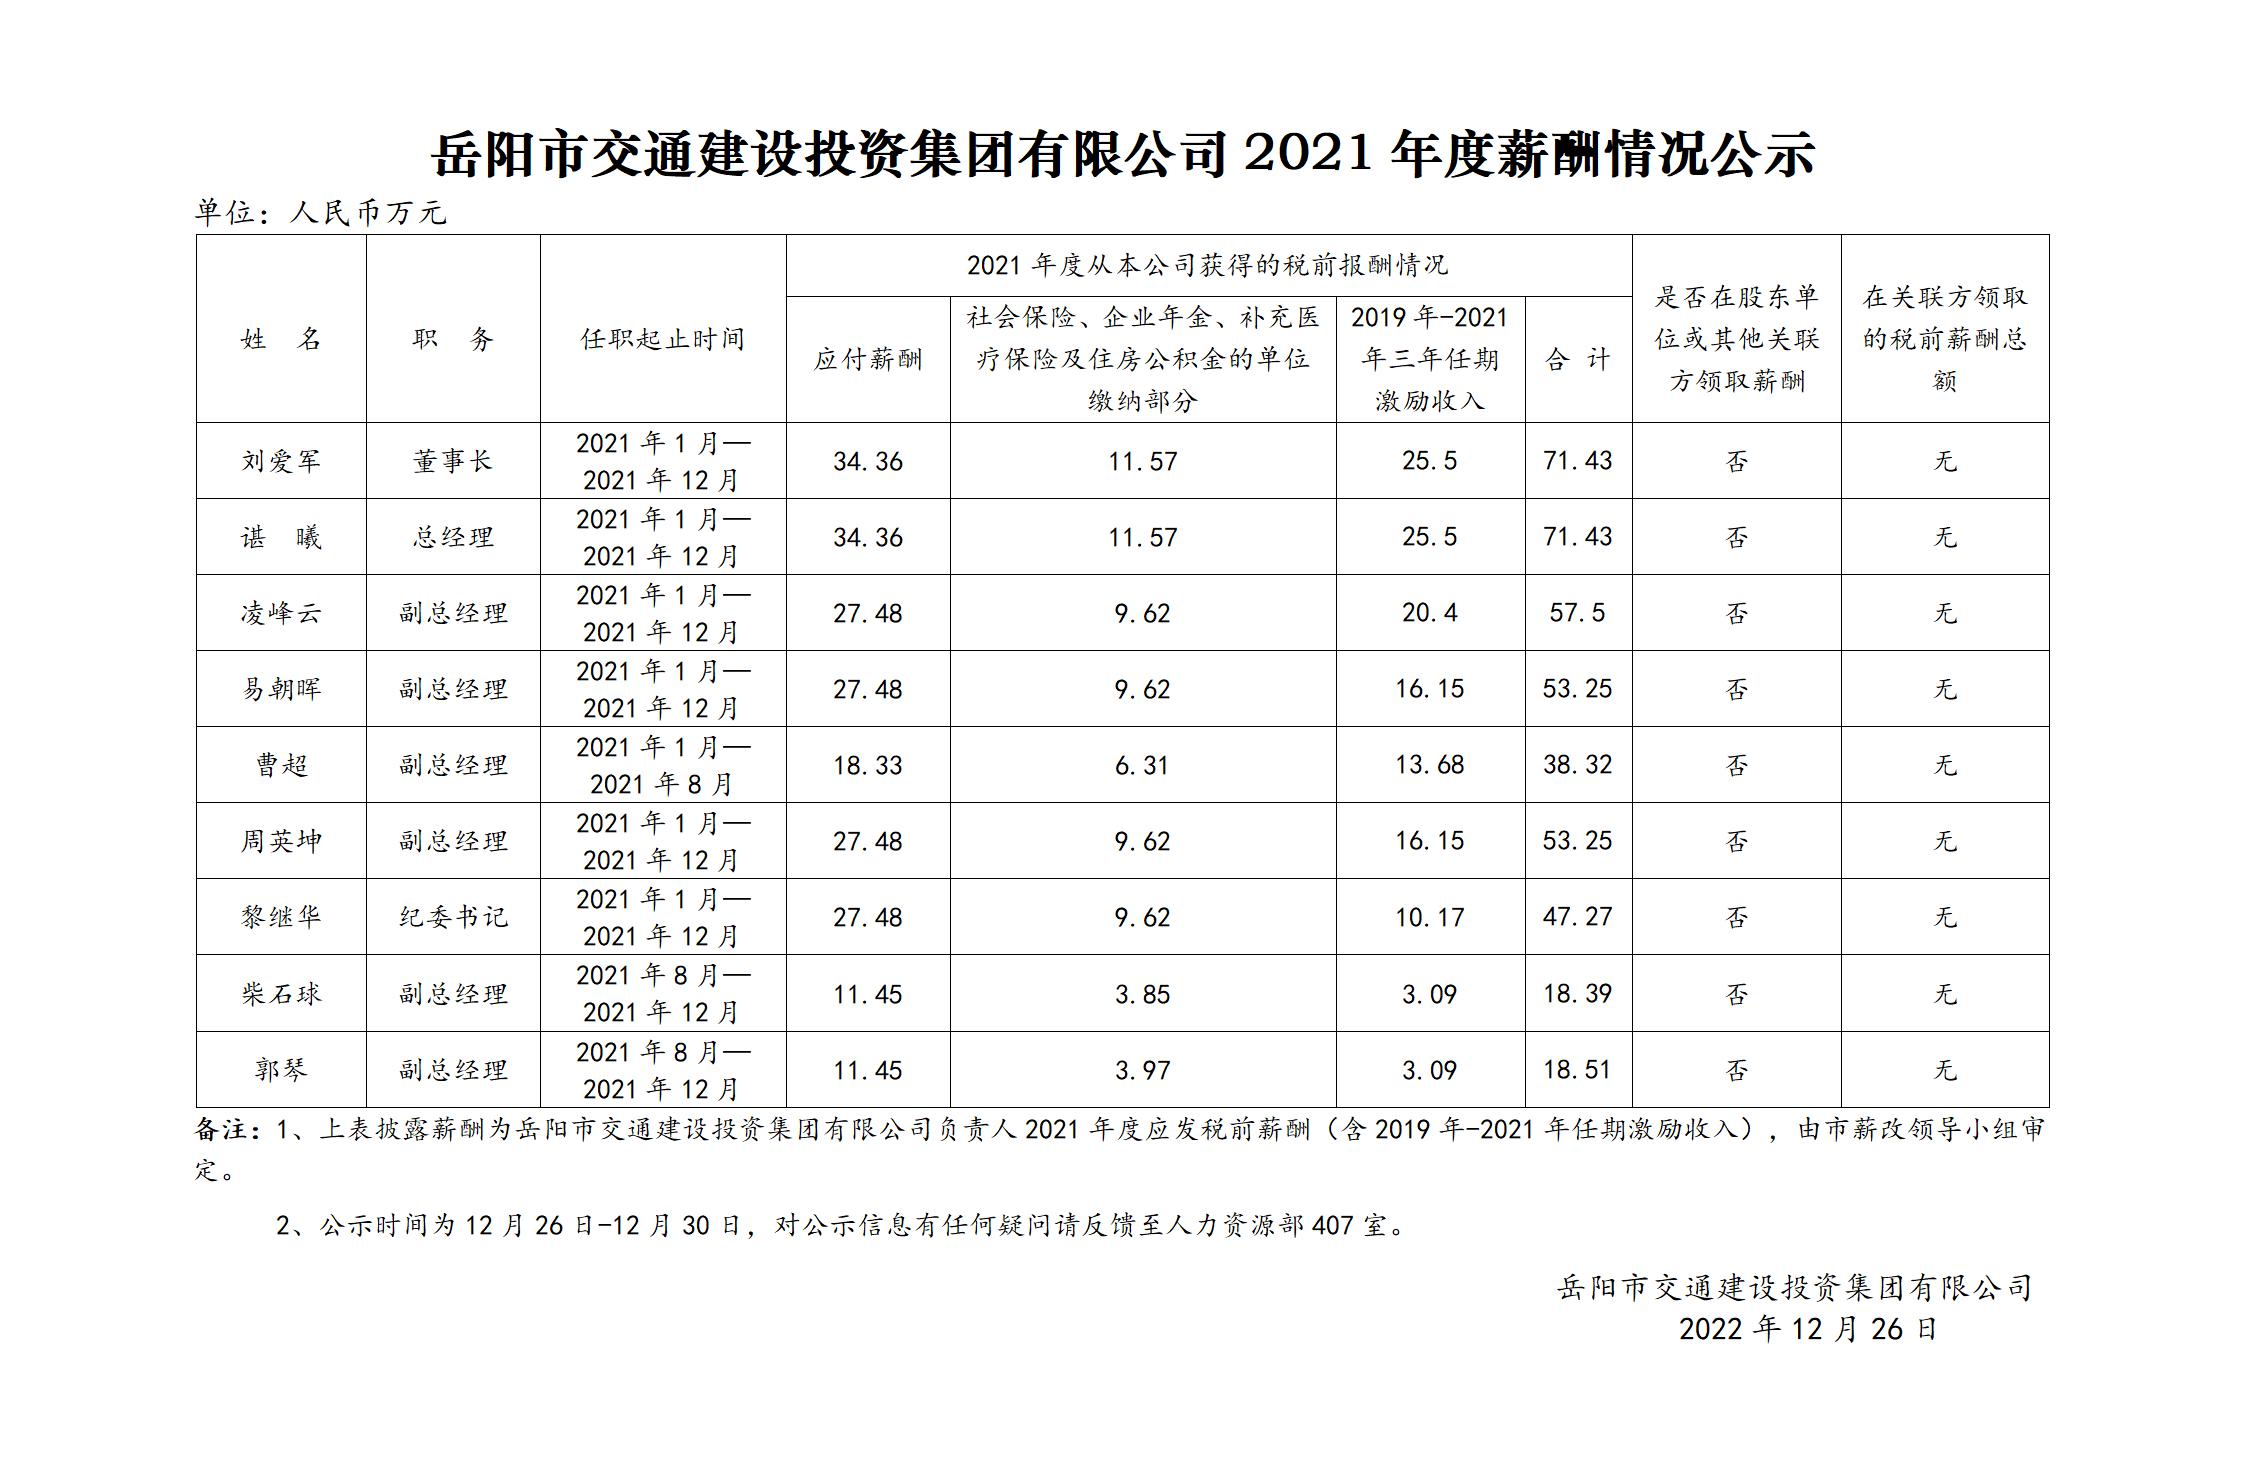 乐鱼官网注册2021年度薪酬情况公示_01.jpg